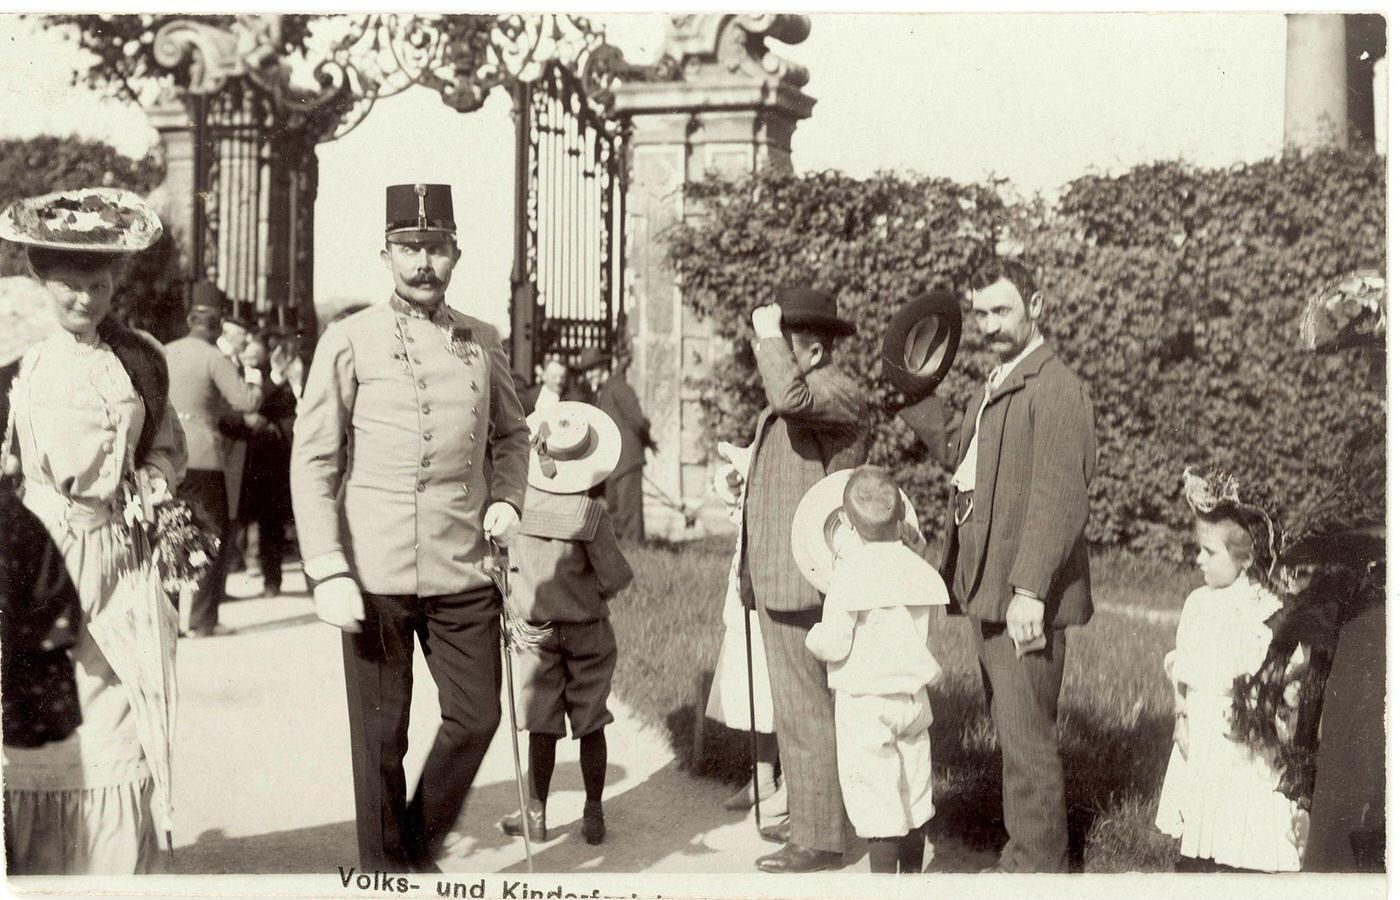 Archduke Franz Ferdinand Of Austria-Este In Belvedere, Folk and children's party, 1905